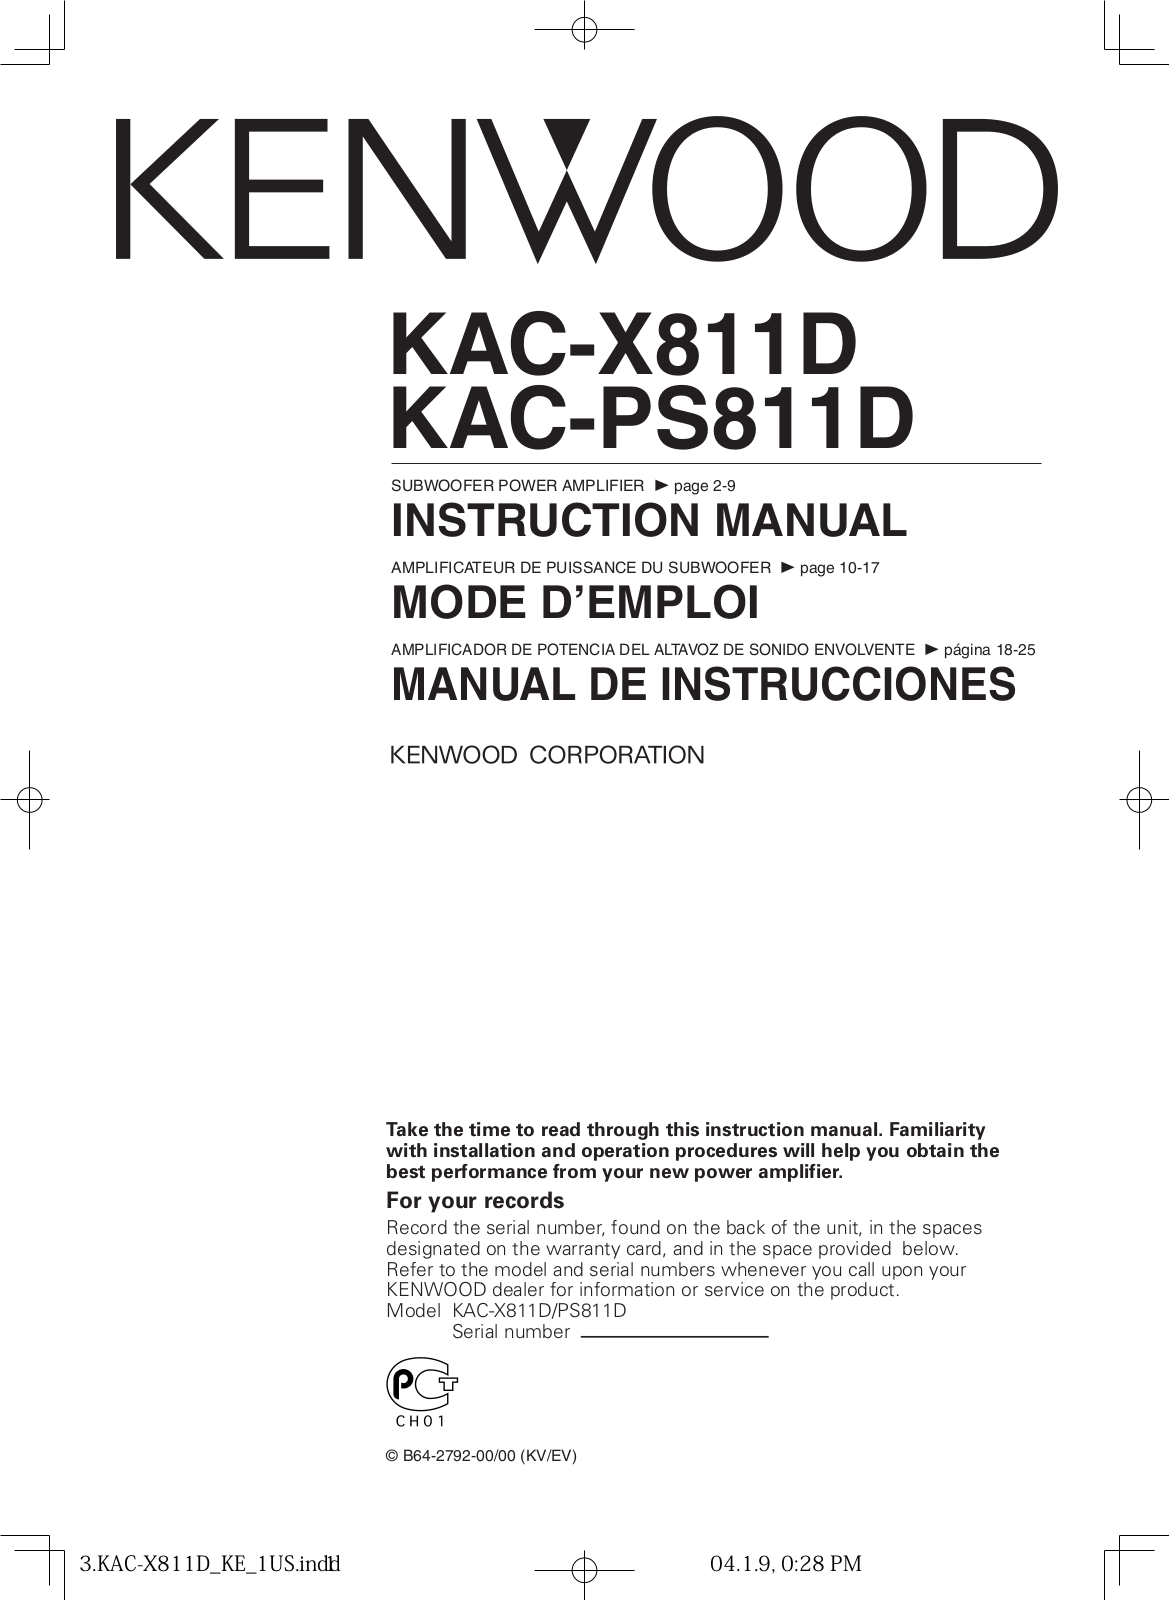 Kenwood KAC-X811D, KAC-PS811D User Manual